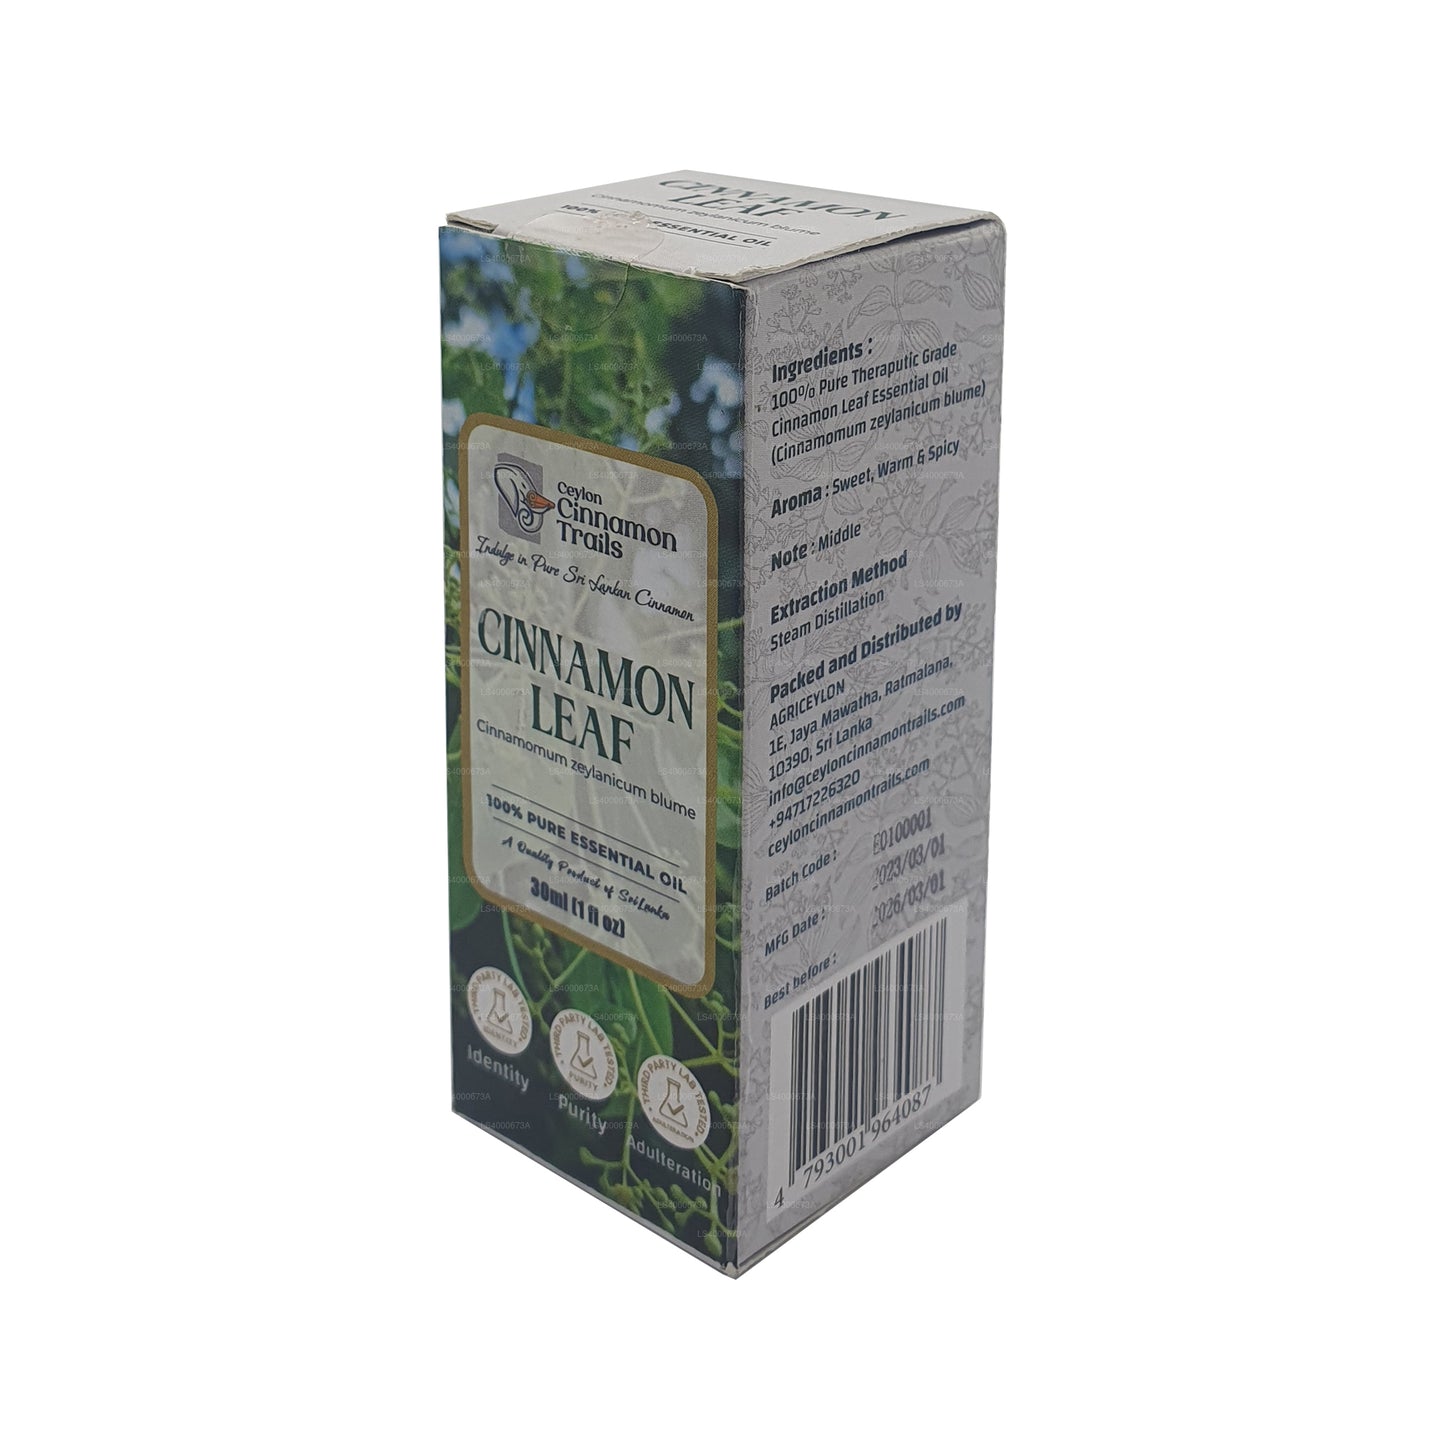 Ätherisches Zimtblattöl von Ceylon Cinnamon Trails (10 ml)